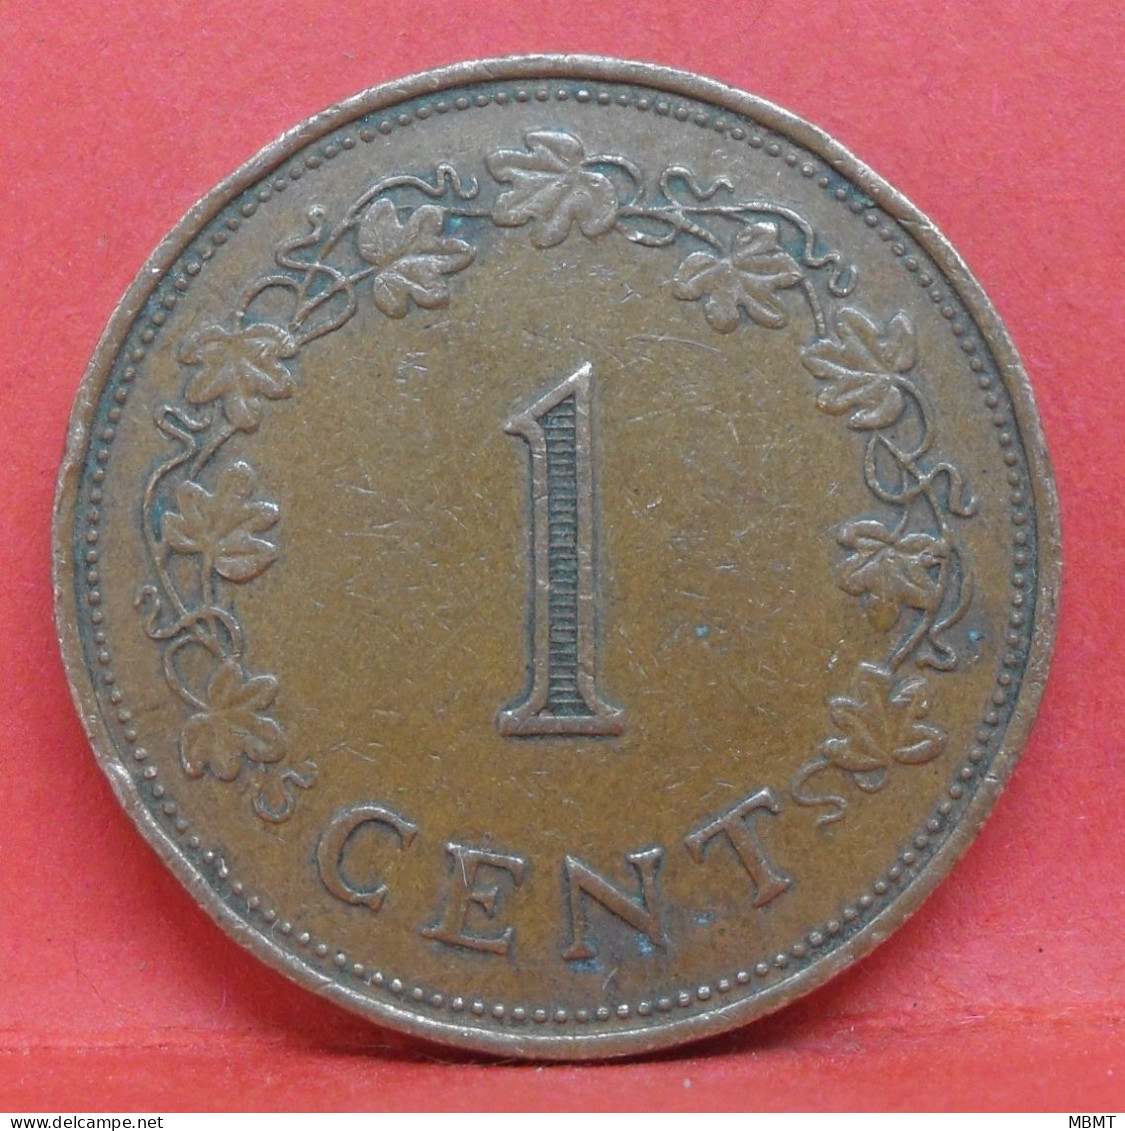 1 Cents 1972 - TTB - Pièce De Monnaie Malte - Article N°3675 - Malta